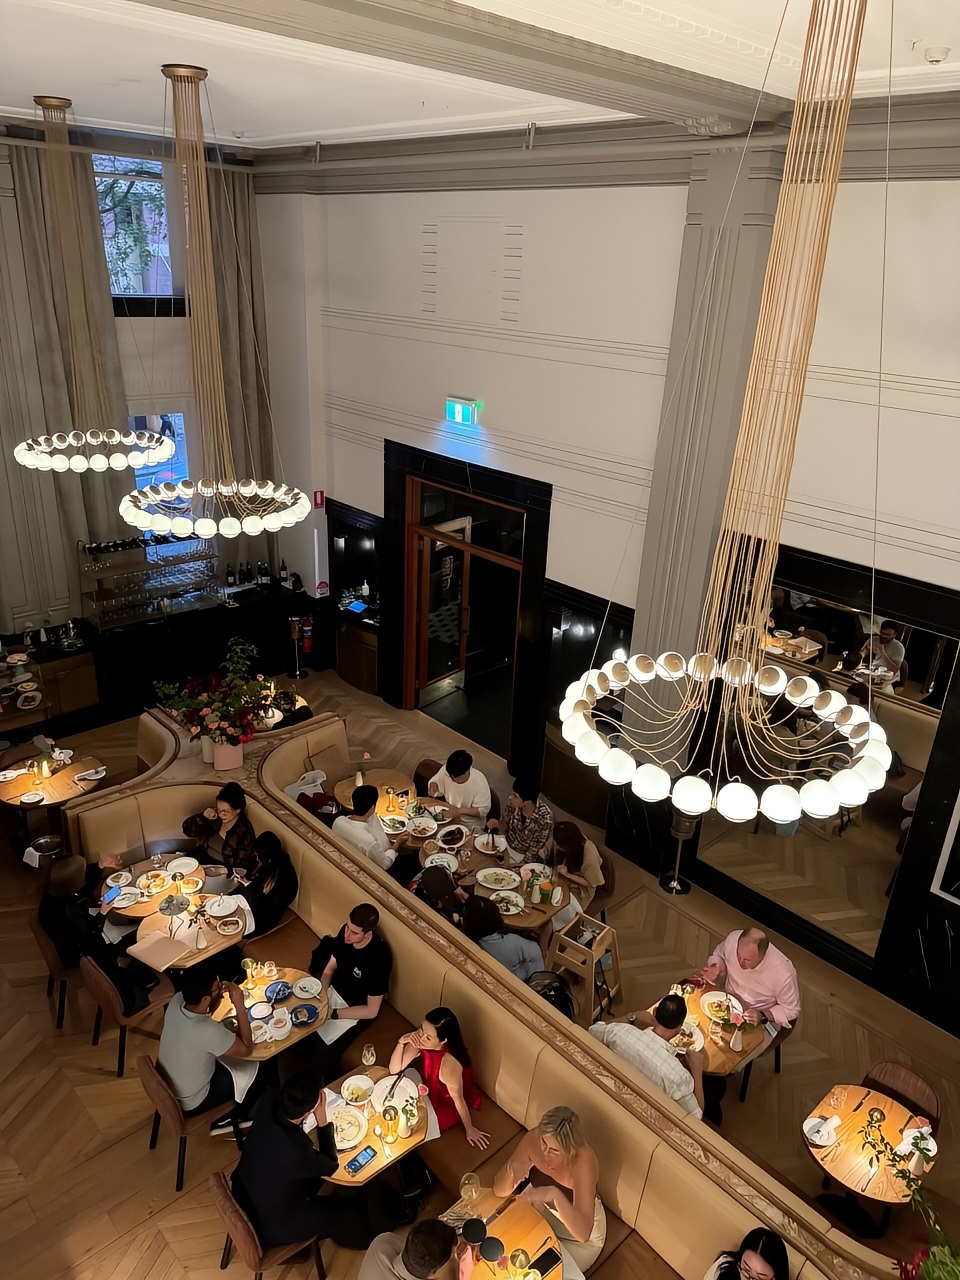 #澳大利亚 🇦🇺 #悉尼 餐厅🍴 一家装修比较有格调的法餐 有甜品车推到桌边供选择 前菜的scall